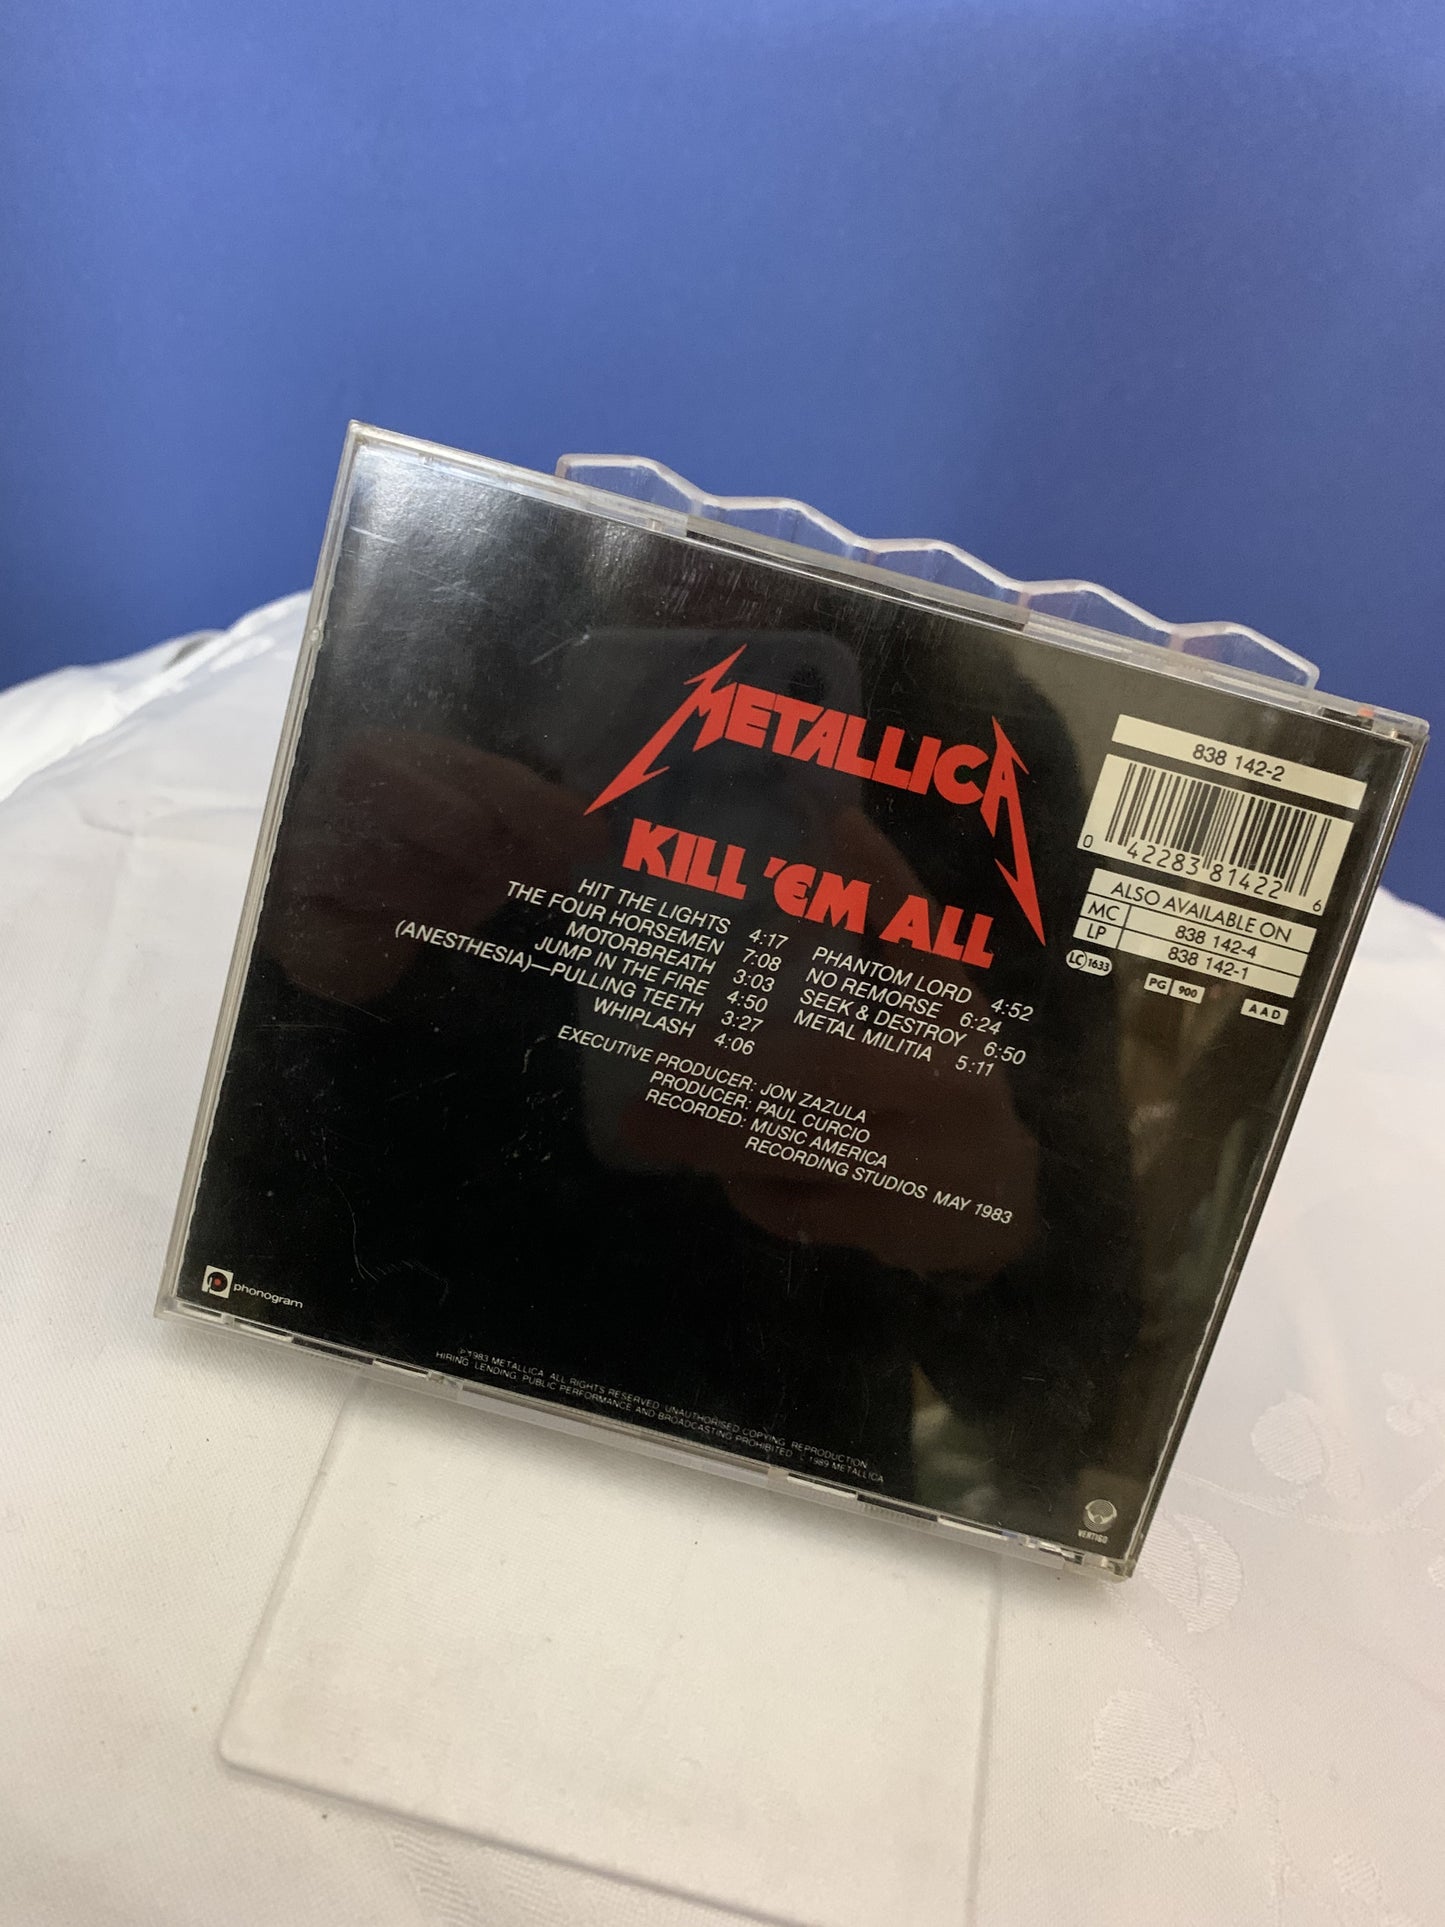 Metallica Kill' em all CD